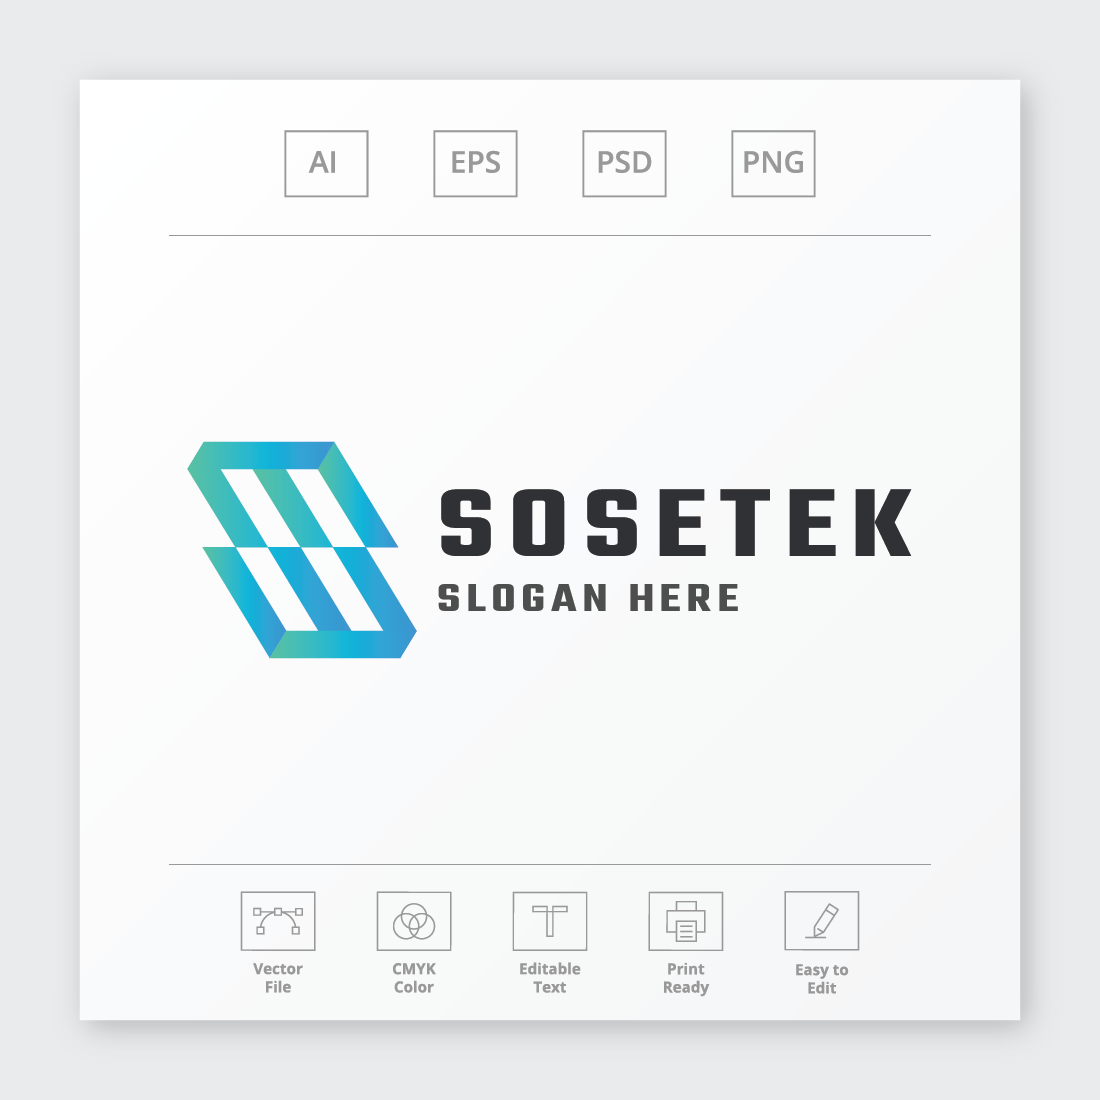 Sosetek Letter S Logo preview image.